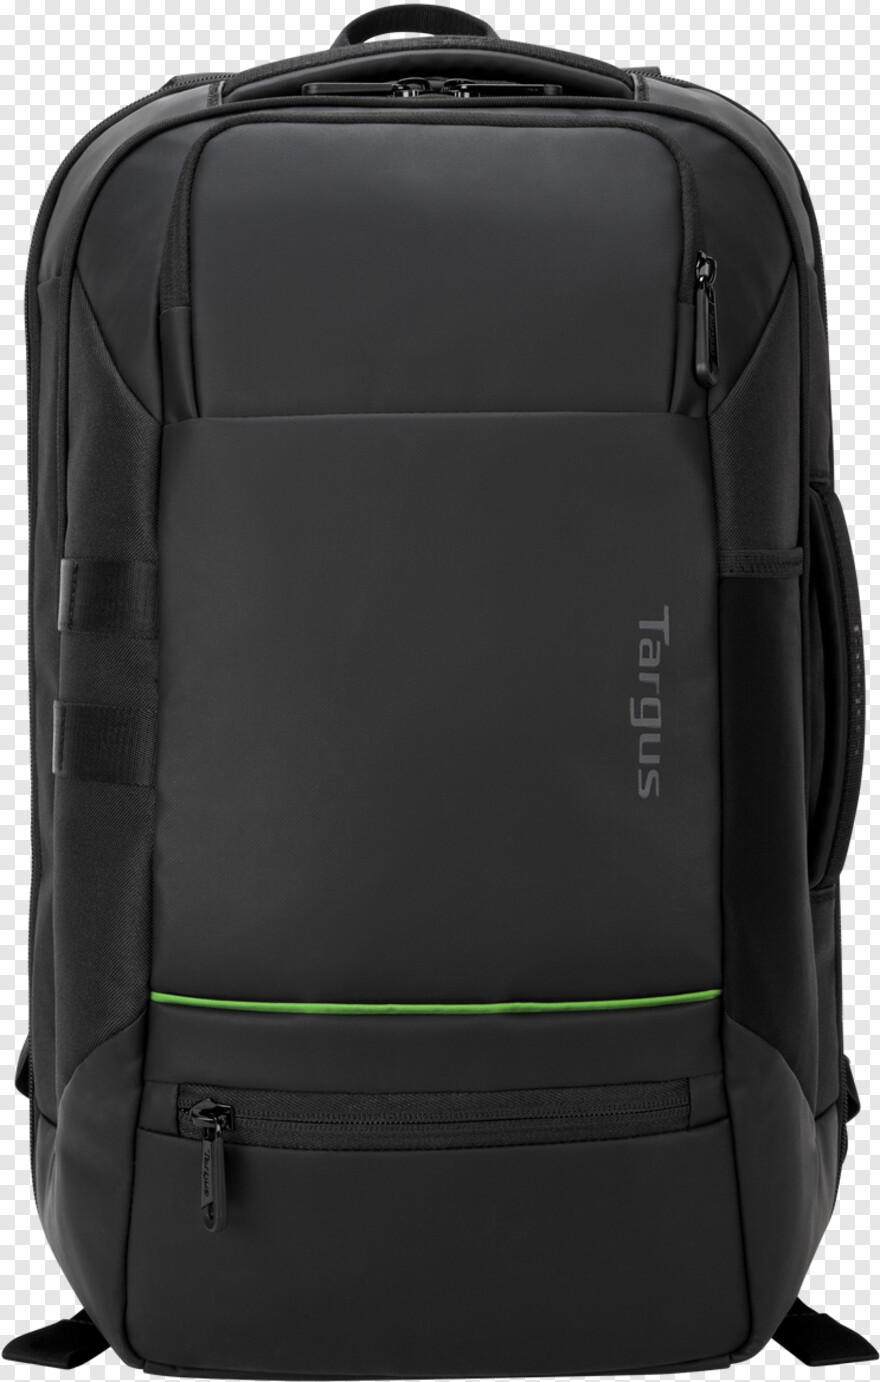 backpack # 426985